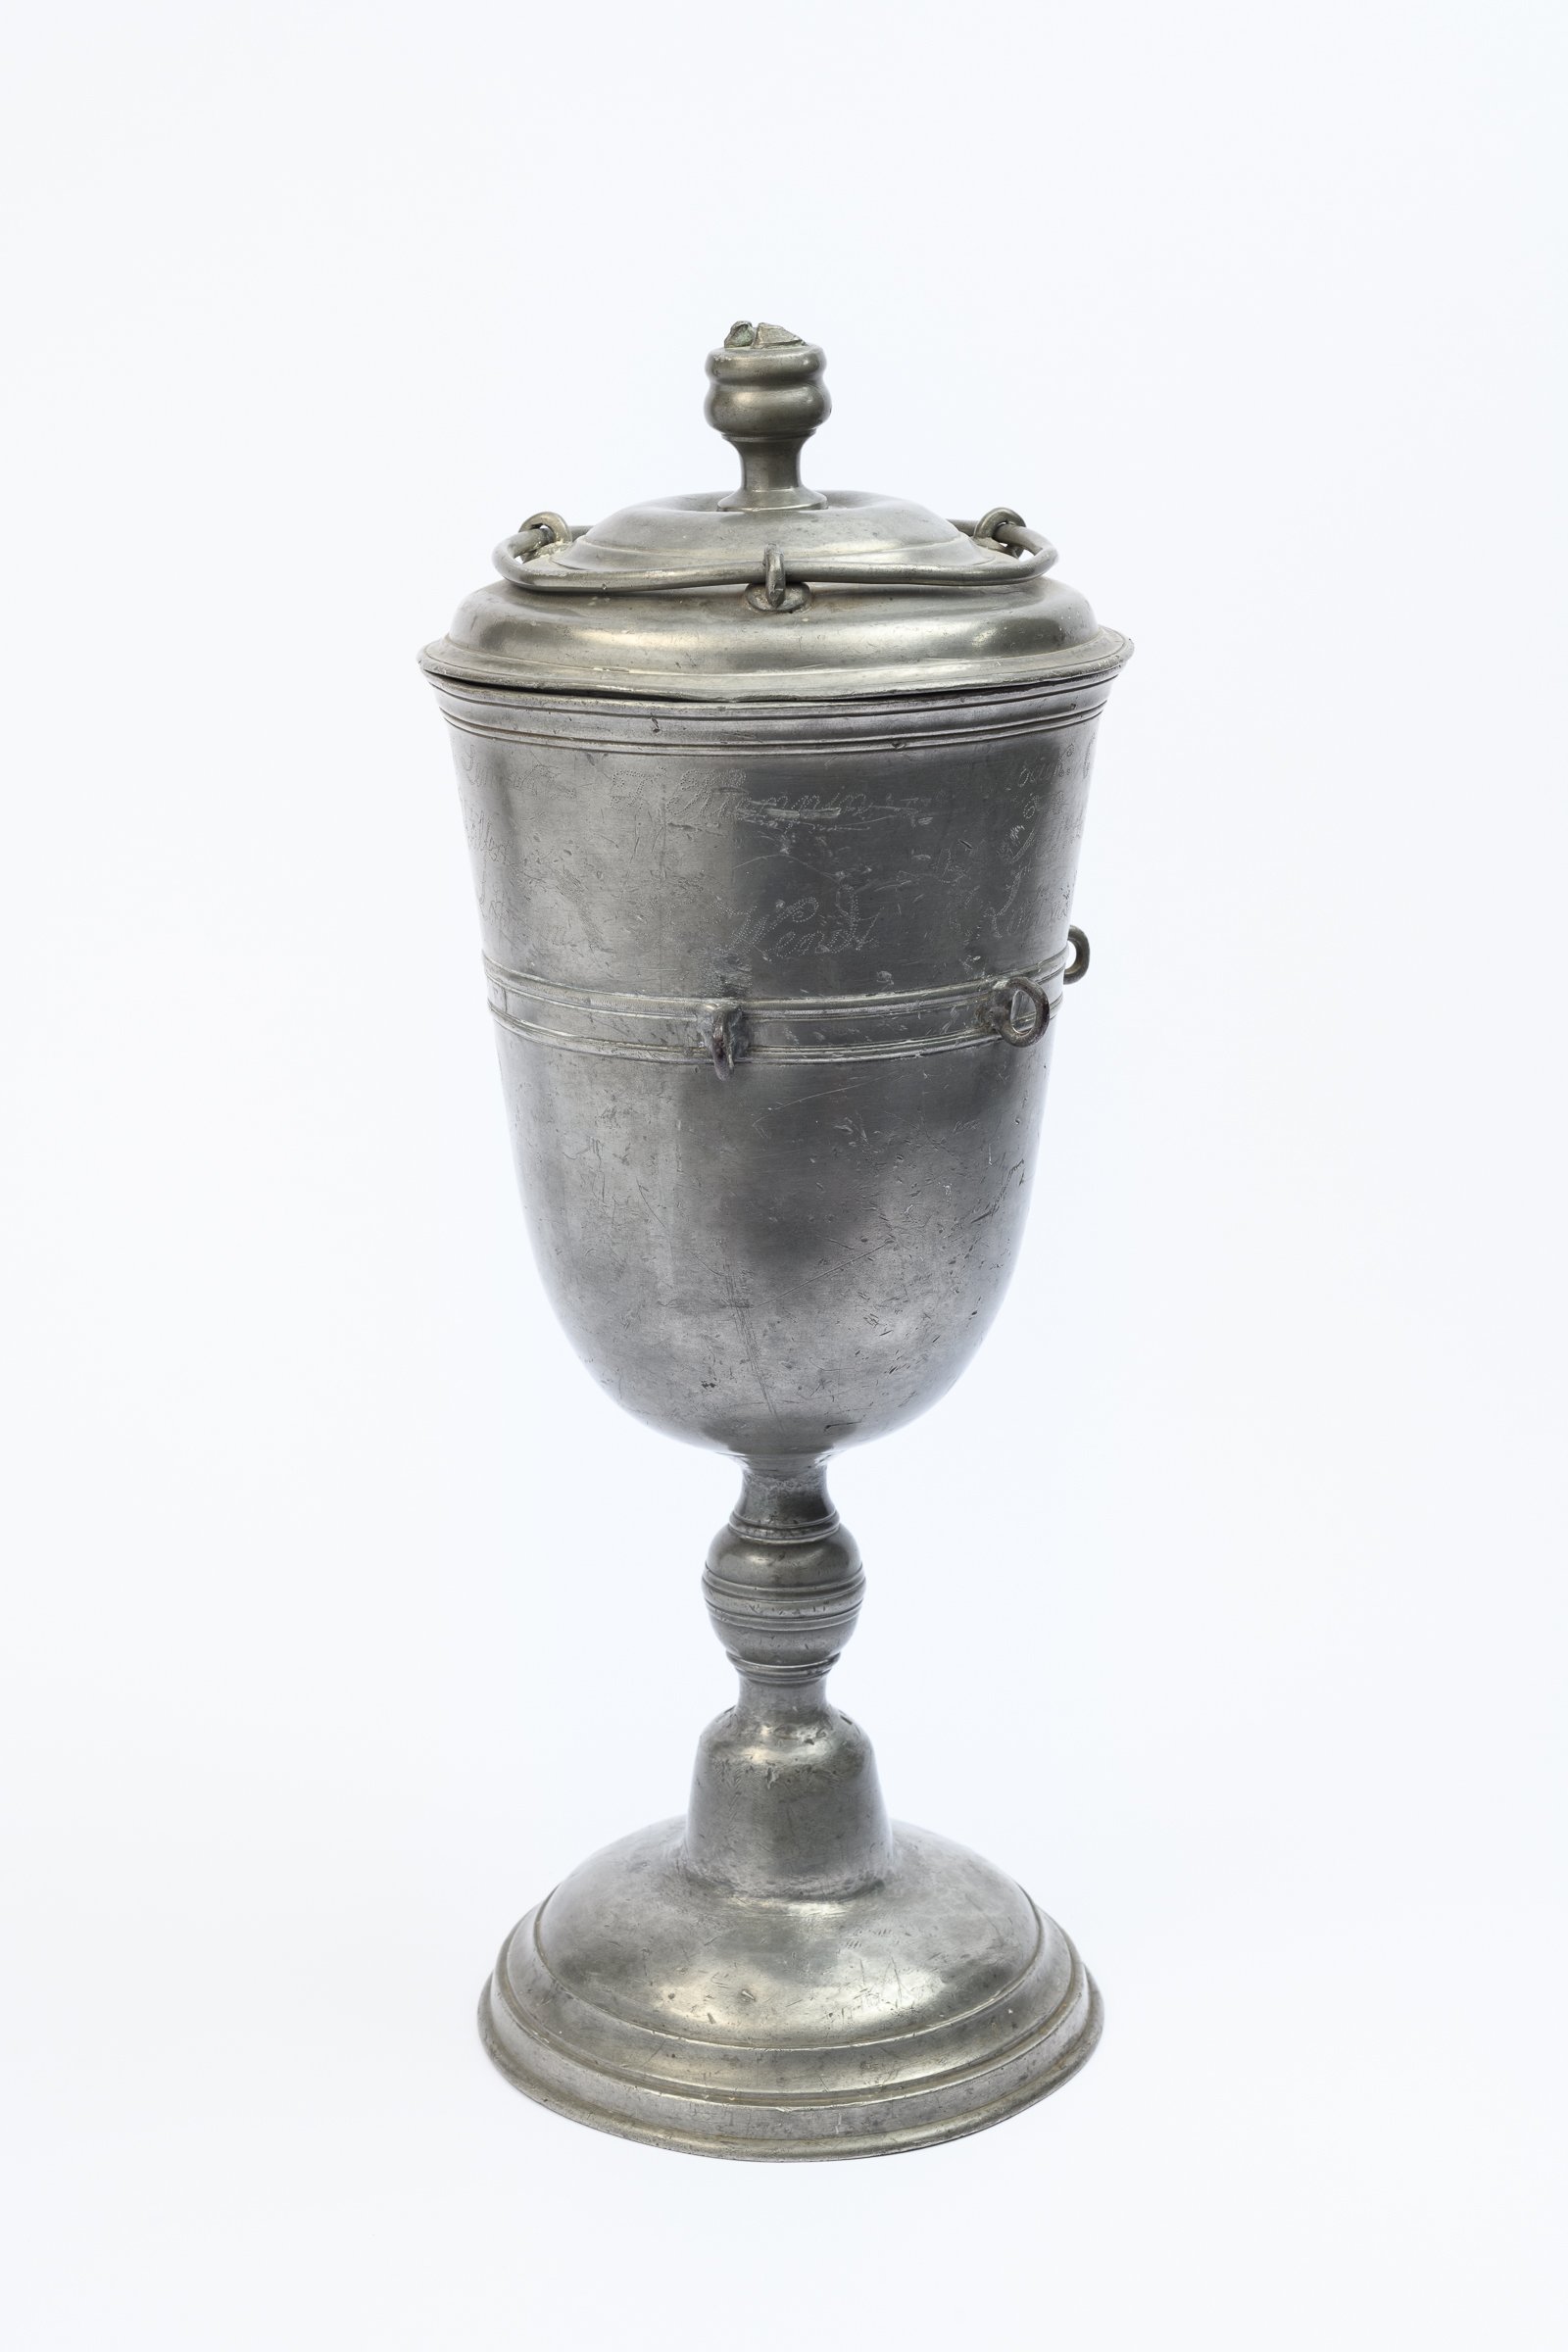 Willkomm-Pokal der Oderberger Zimmerleute (Binnenschifffahrts-Museum Oderberg CC BY-NC-SA)